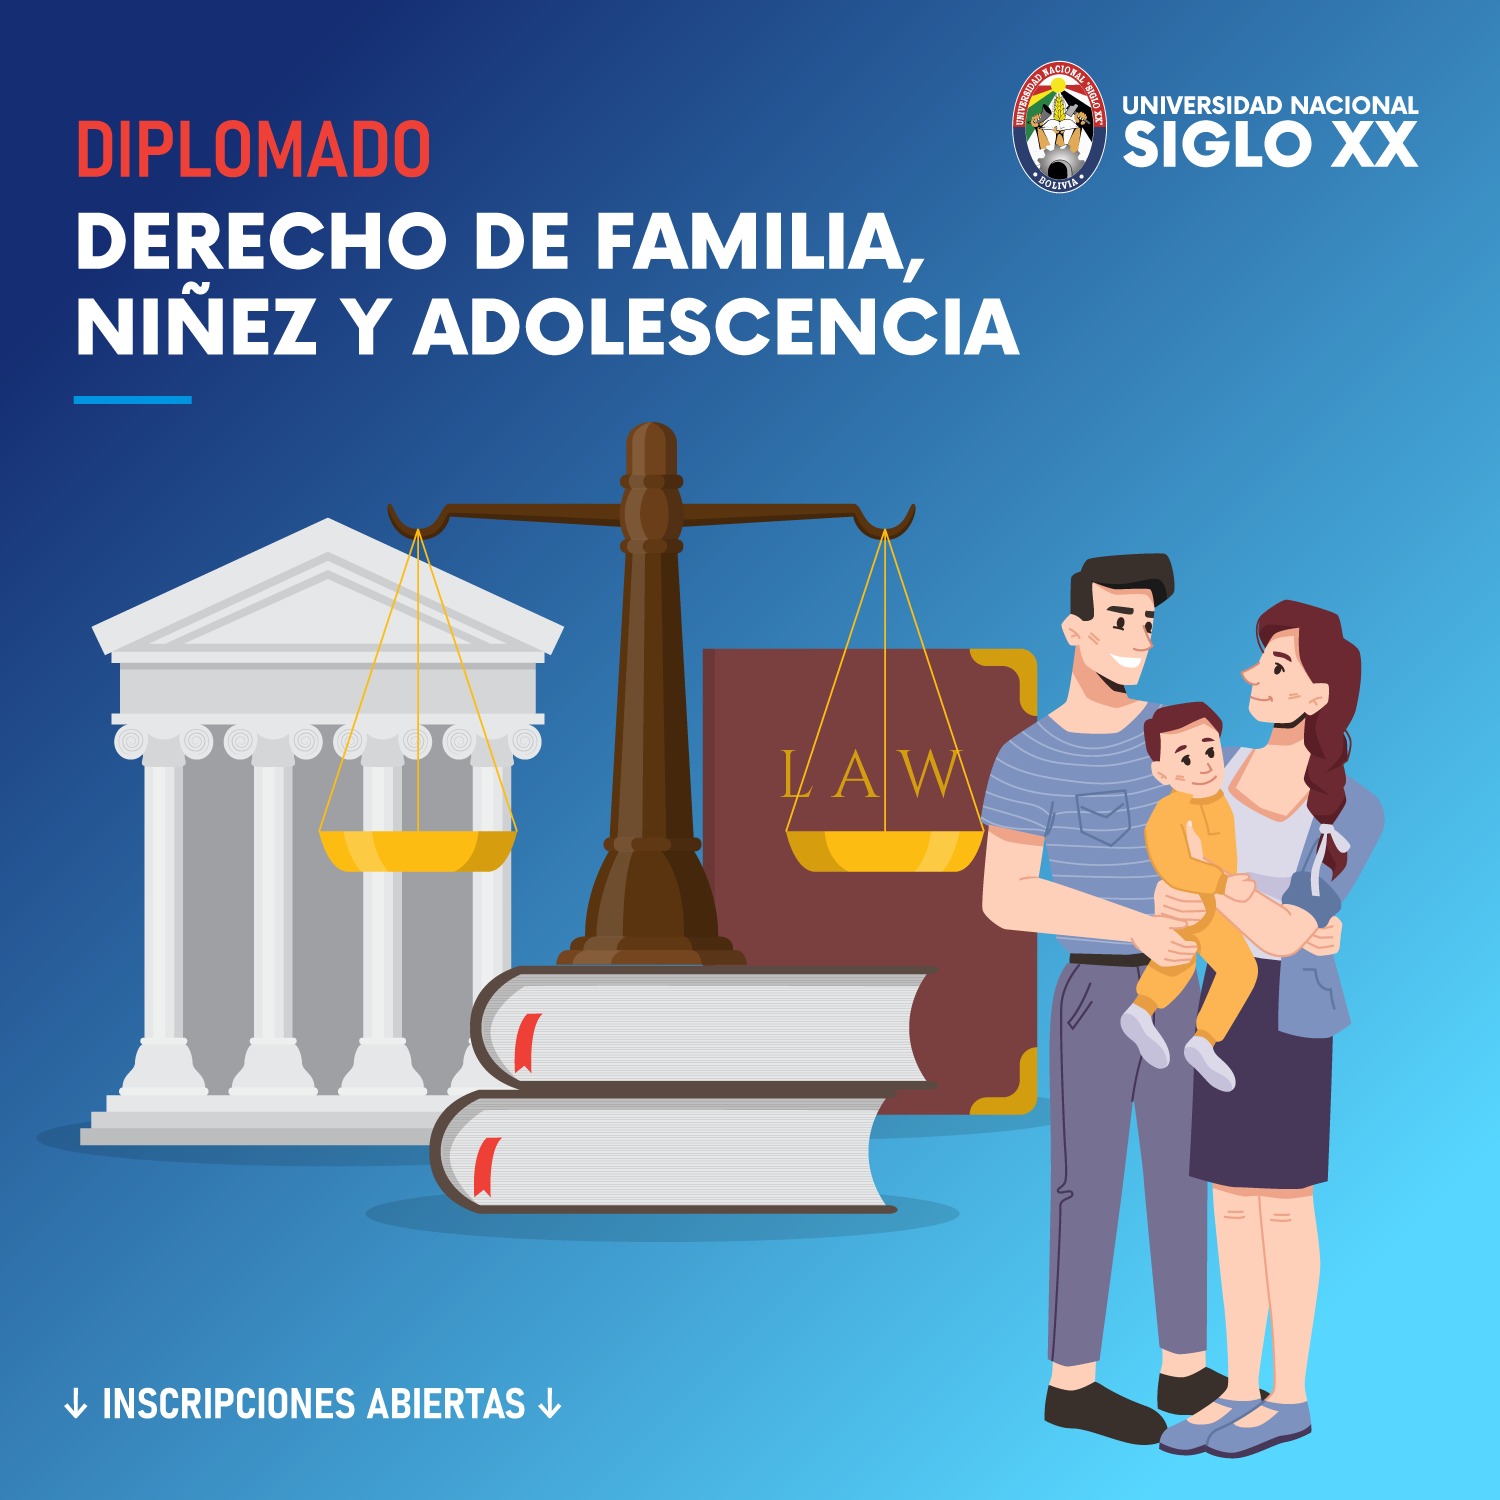 Diplomado DIPLOMADO EN DERECHO DE FAMILIA, NIÑEZ Y ADOLESCENCIA